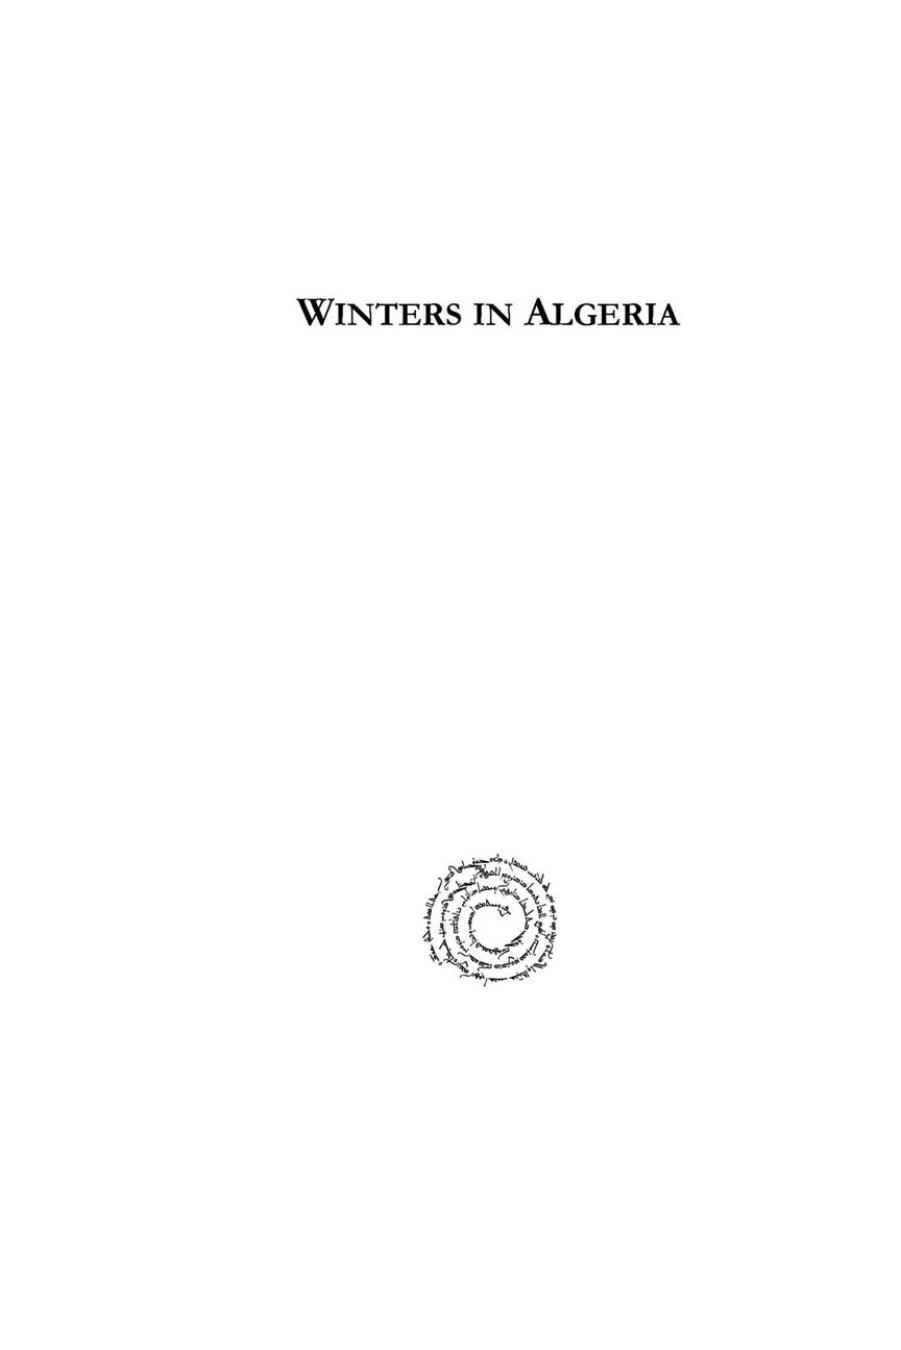 Winters in Algeria by Frederick Arthur Bridgman